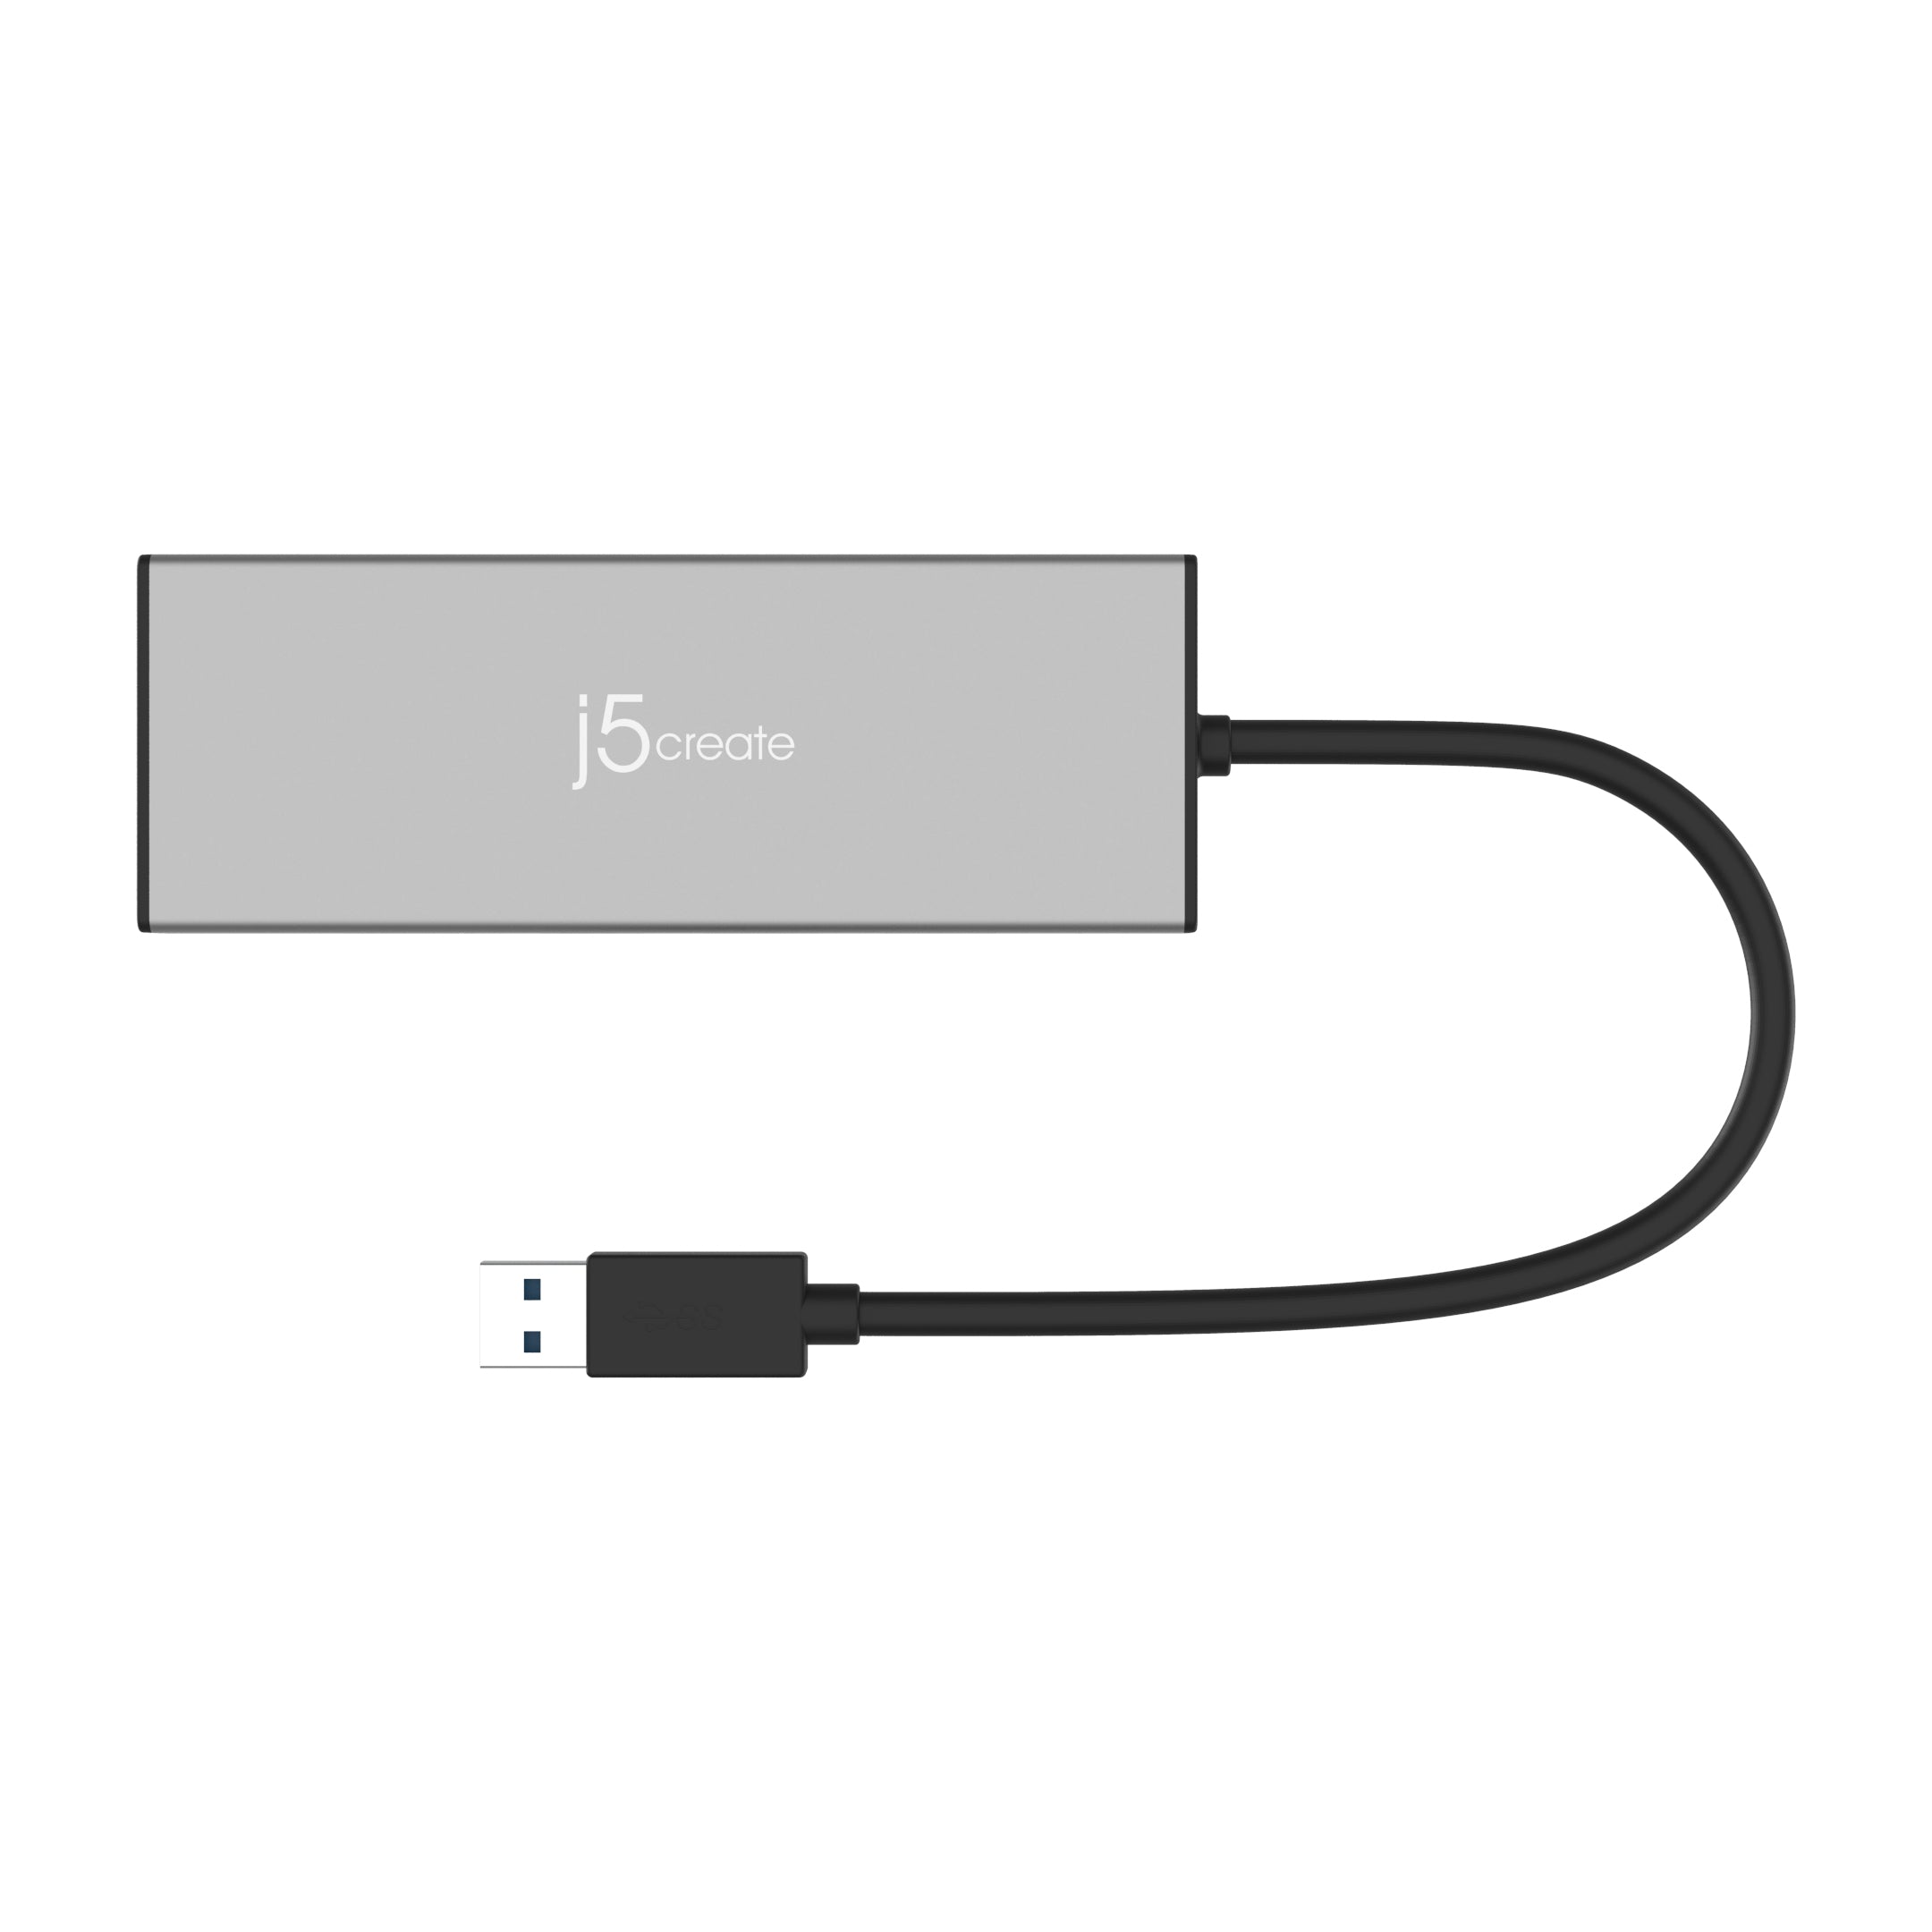 j5 create USB 3.0 5in1 デュアルモニタ ミニドック ブラック JUD323B-EJ マルチハブ USBハブ  ドッキングステーション 1080p QWXGA 60Hz対応 軽量 コンパクト Surface Pro 6, Laptop対応  いよいよ人気ブランド